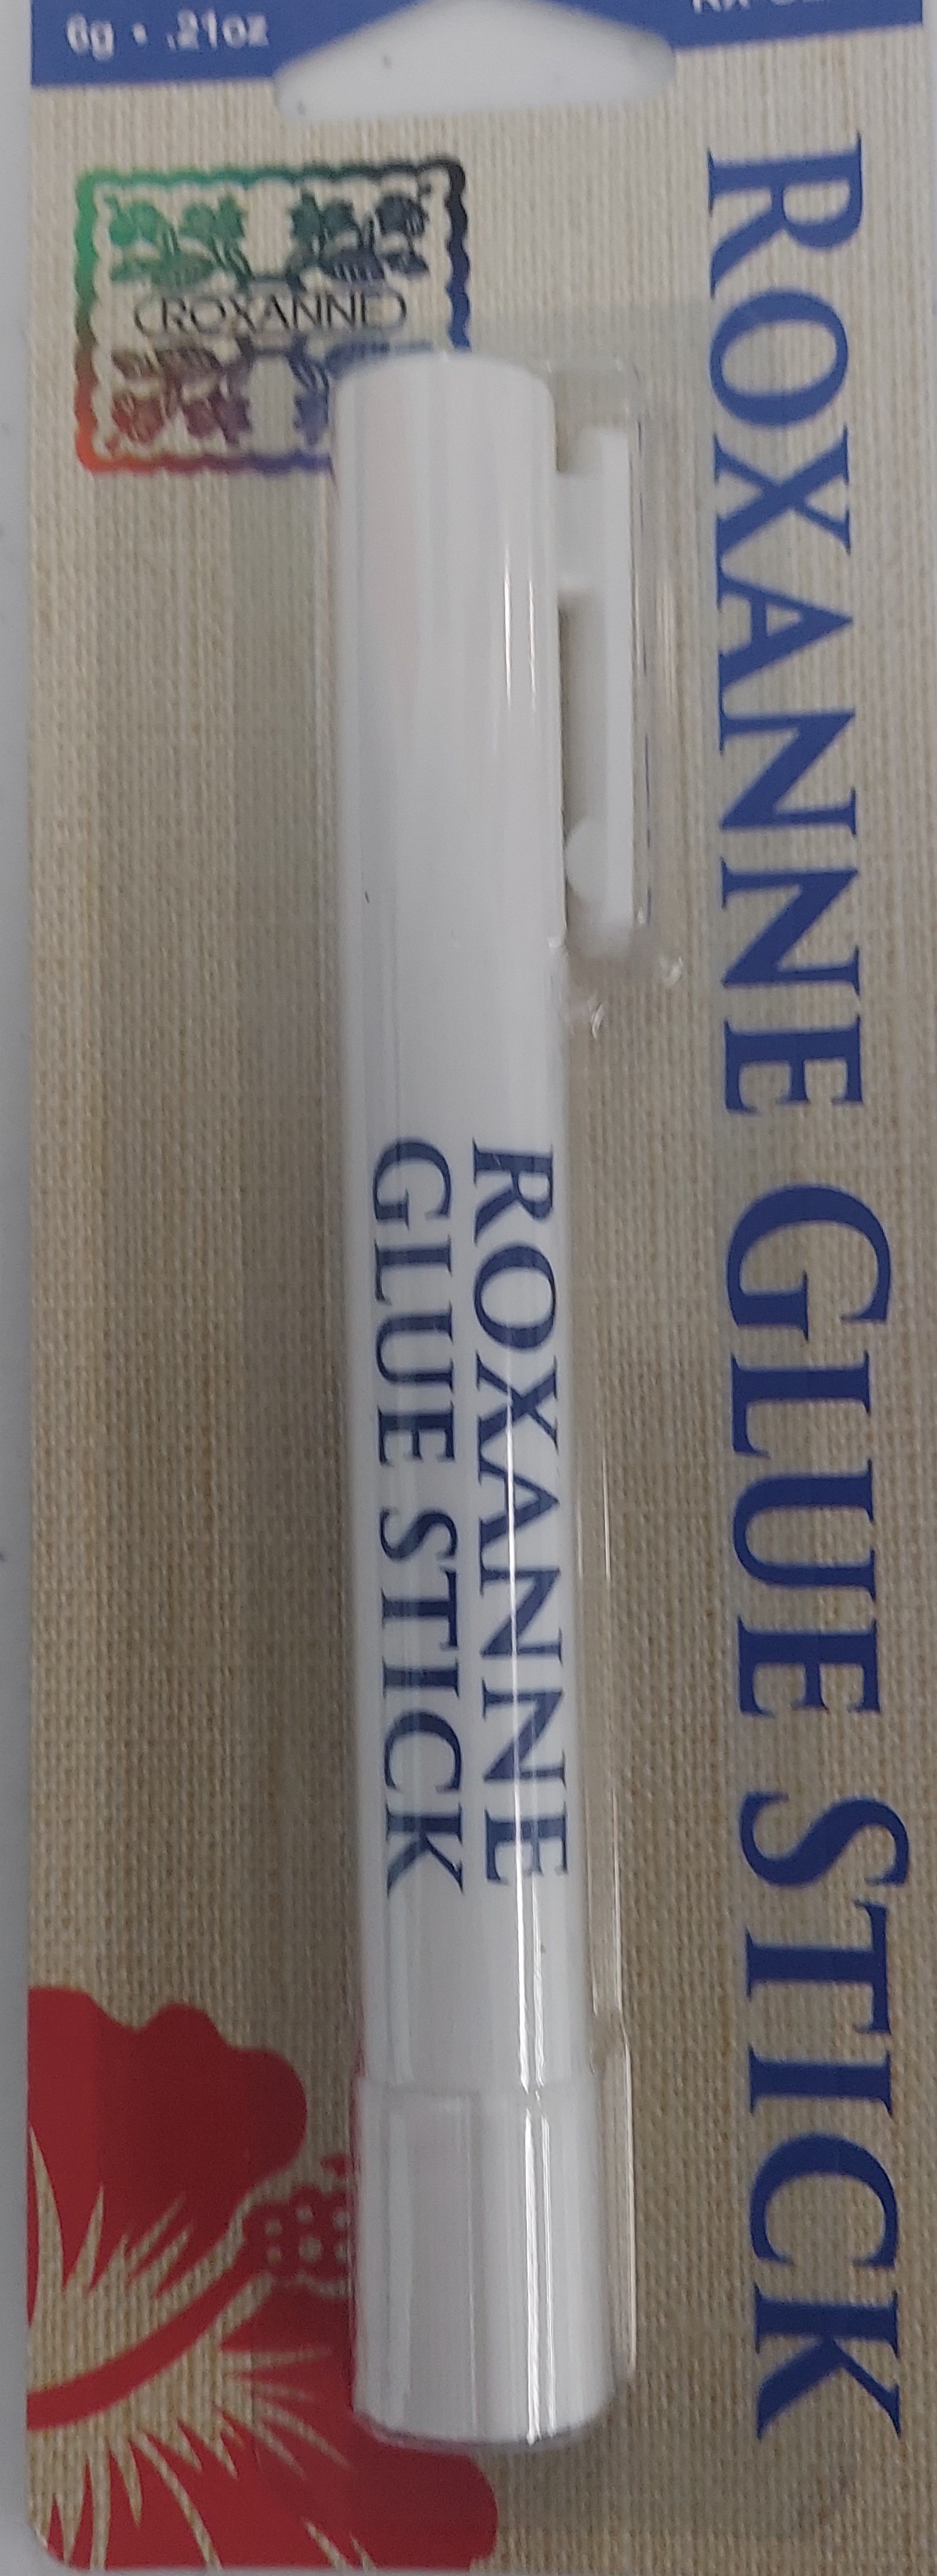 r glue stick